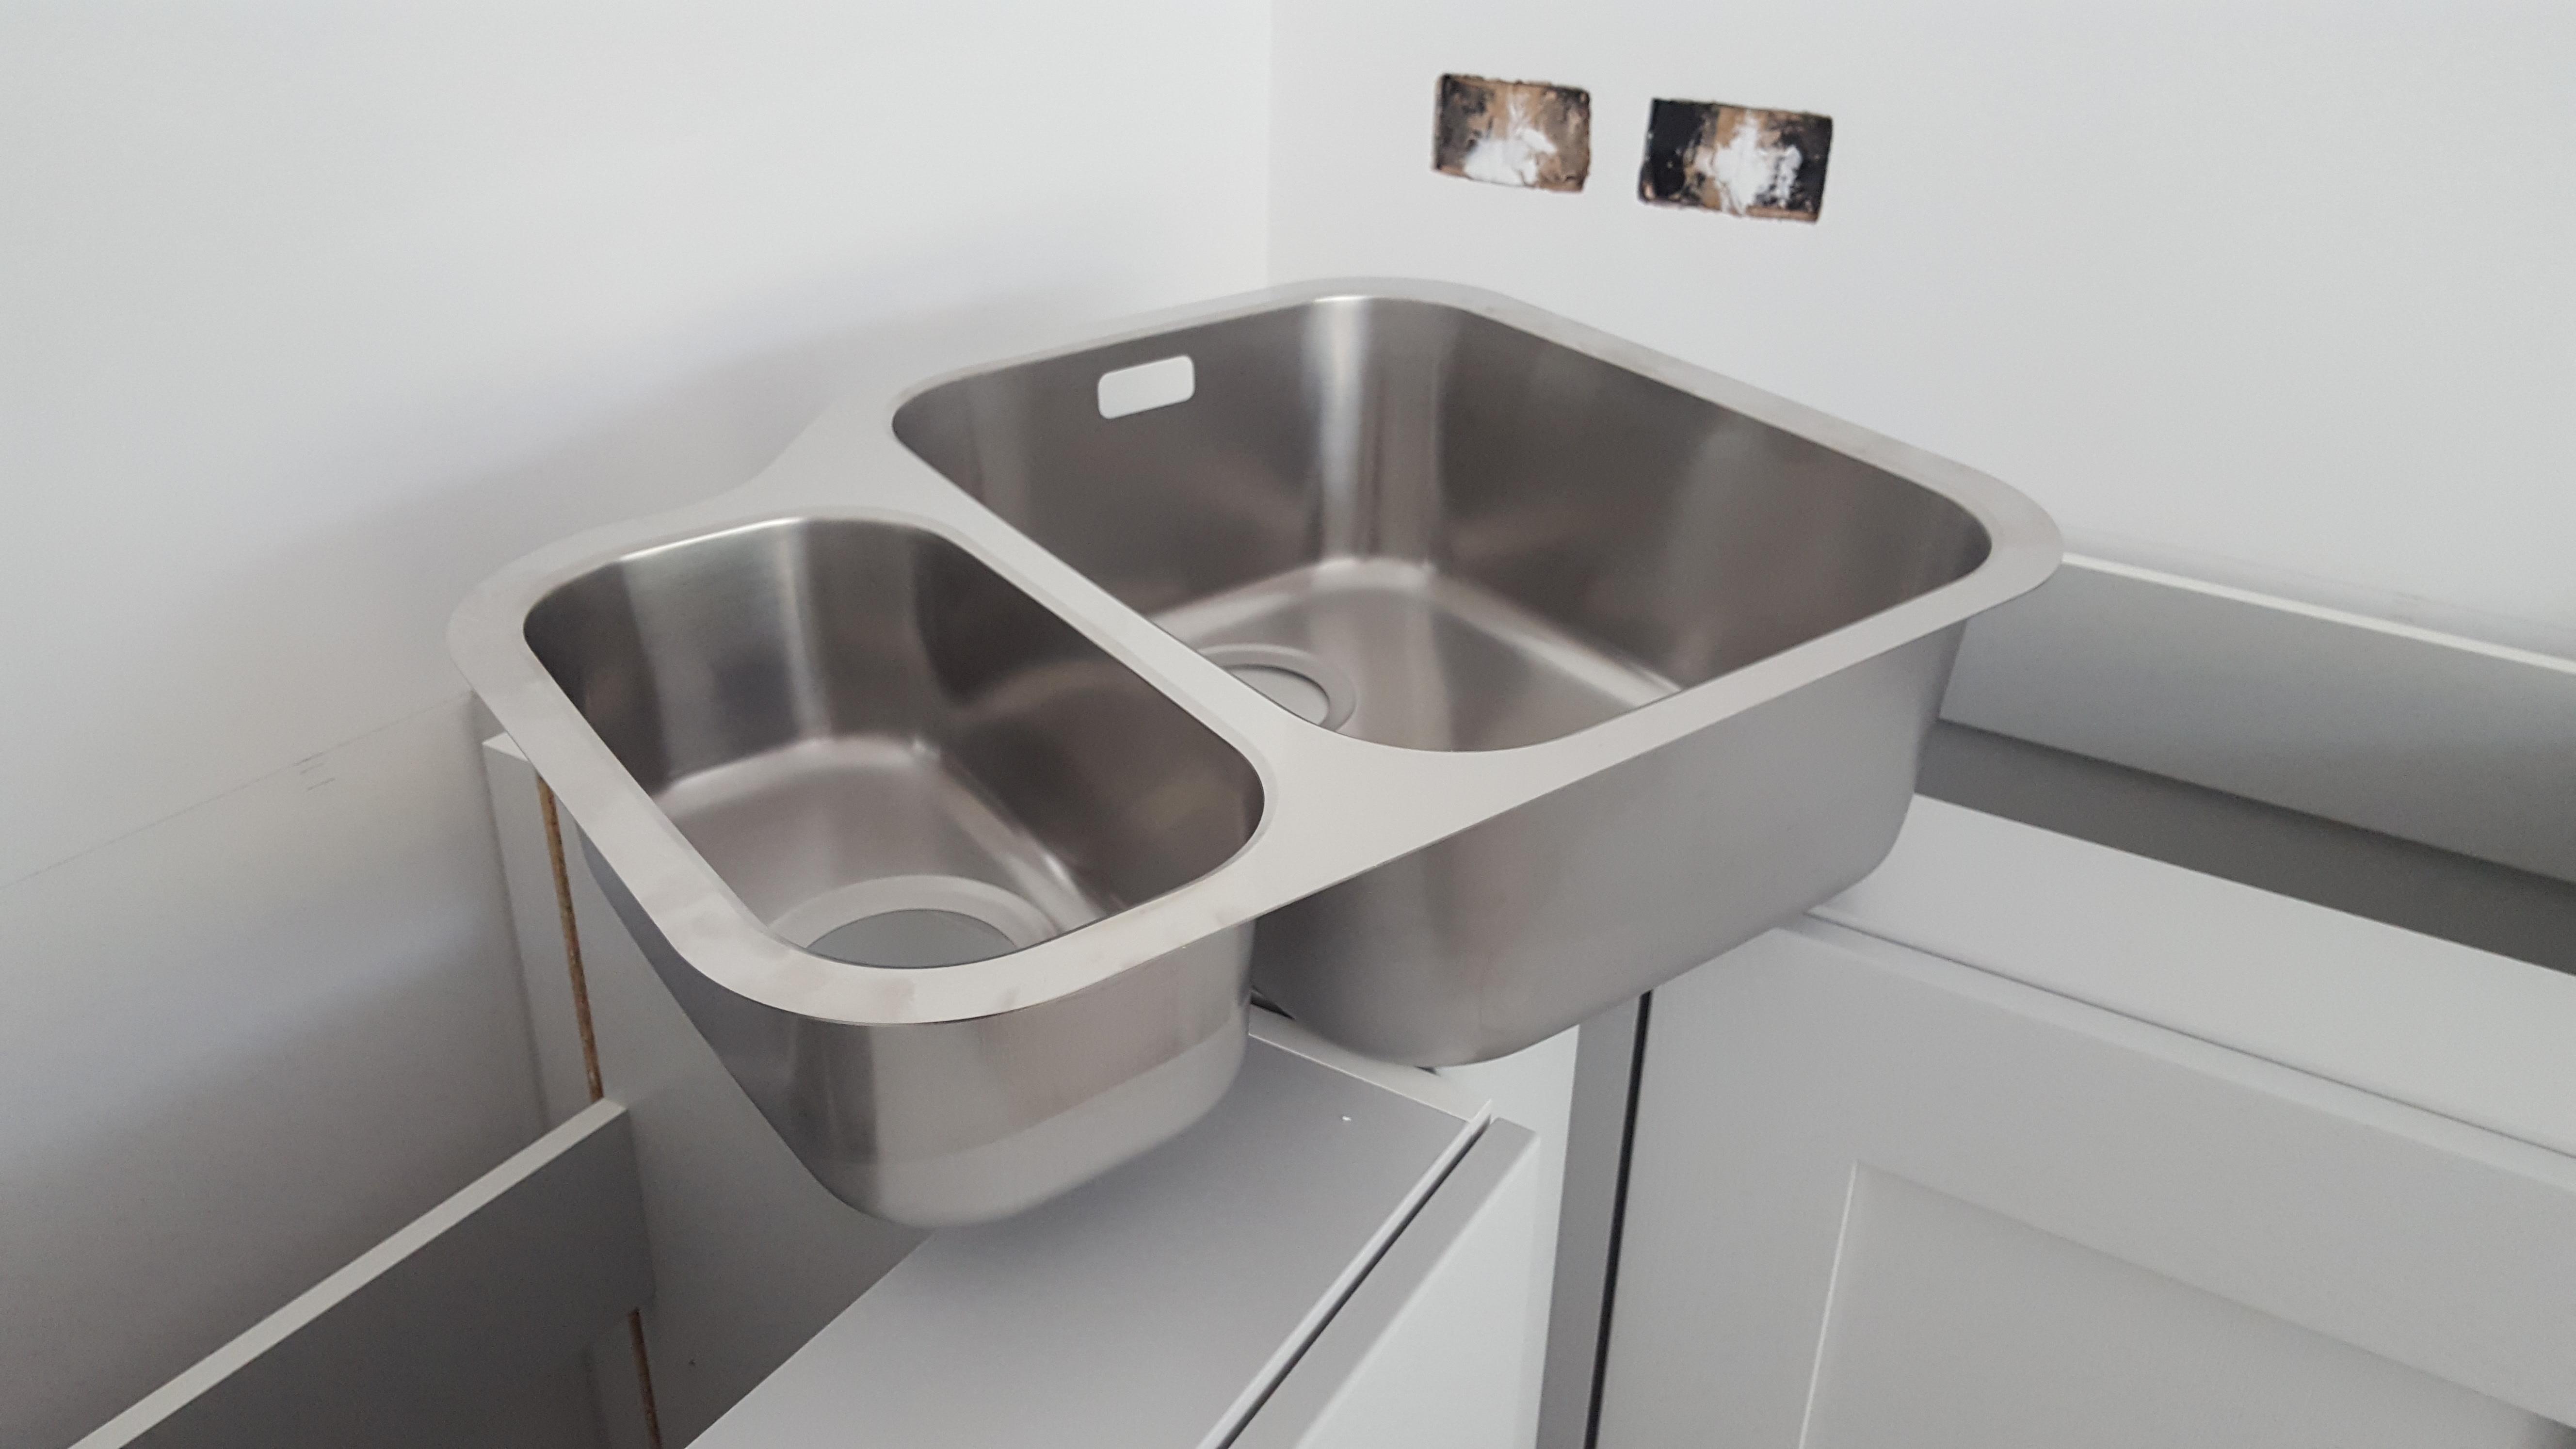 undermount kitchen sink air gap